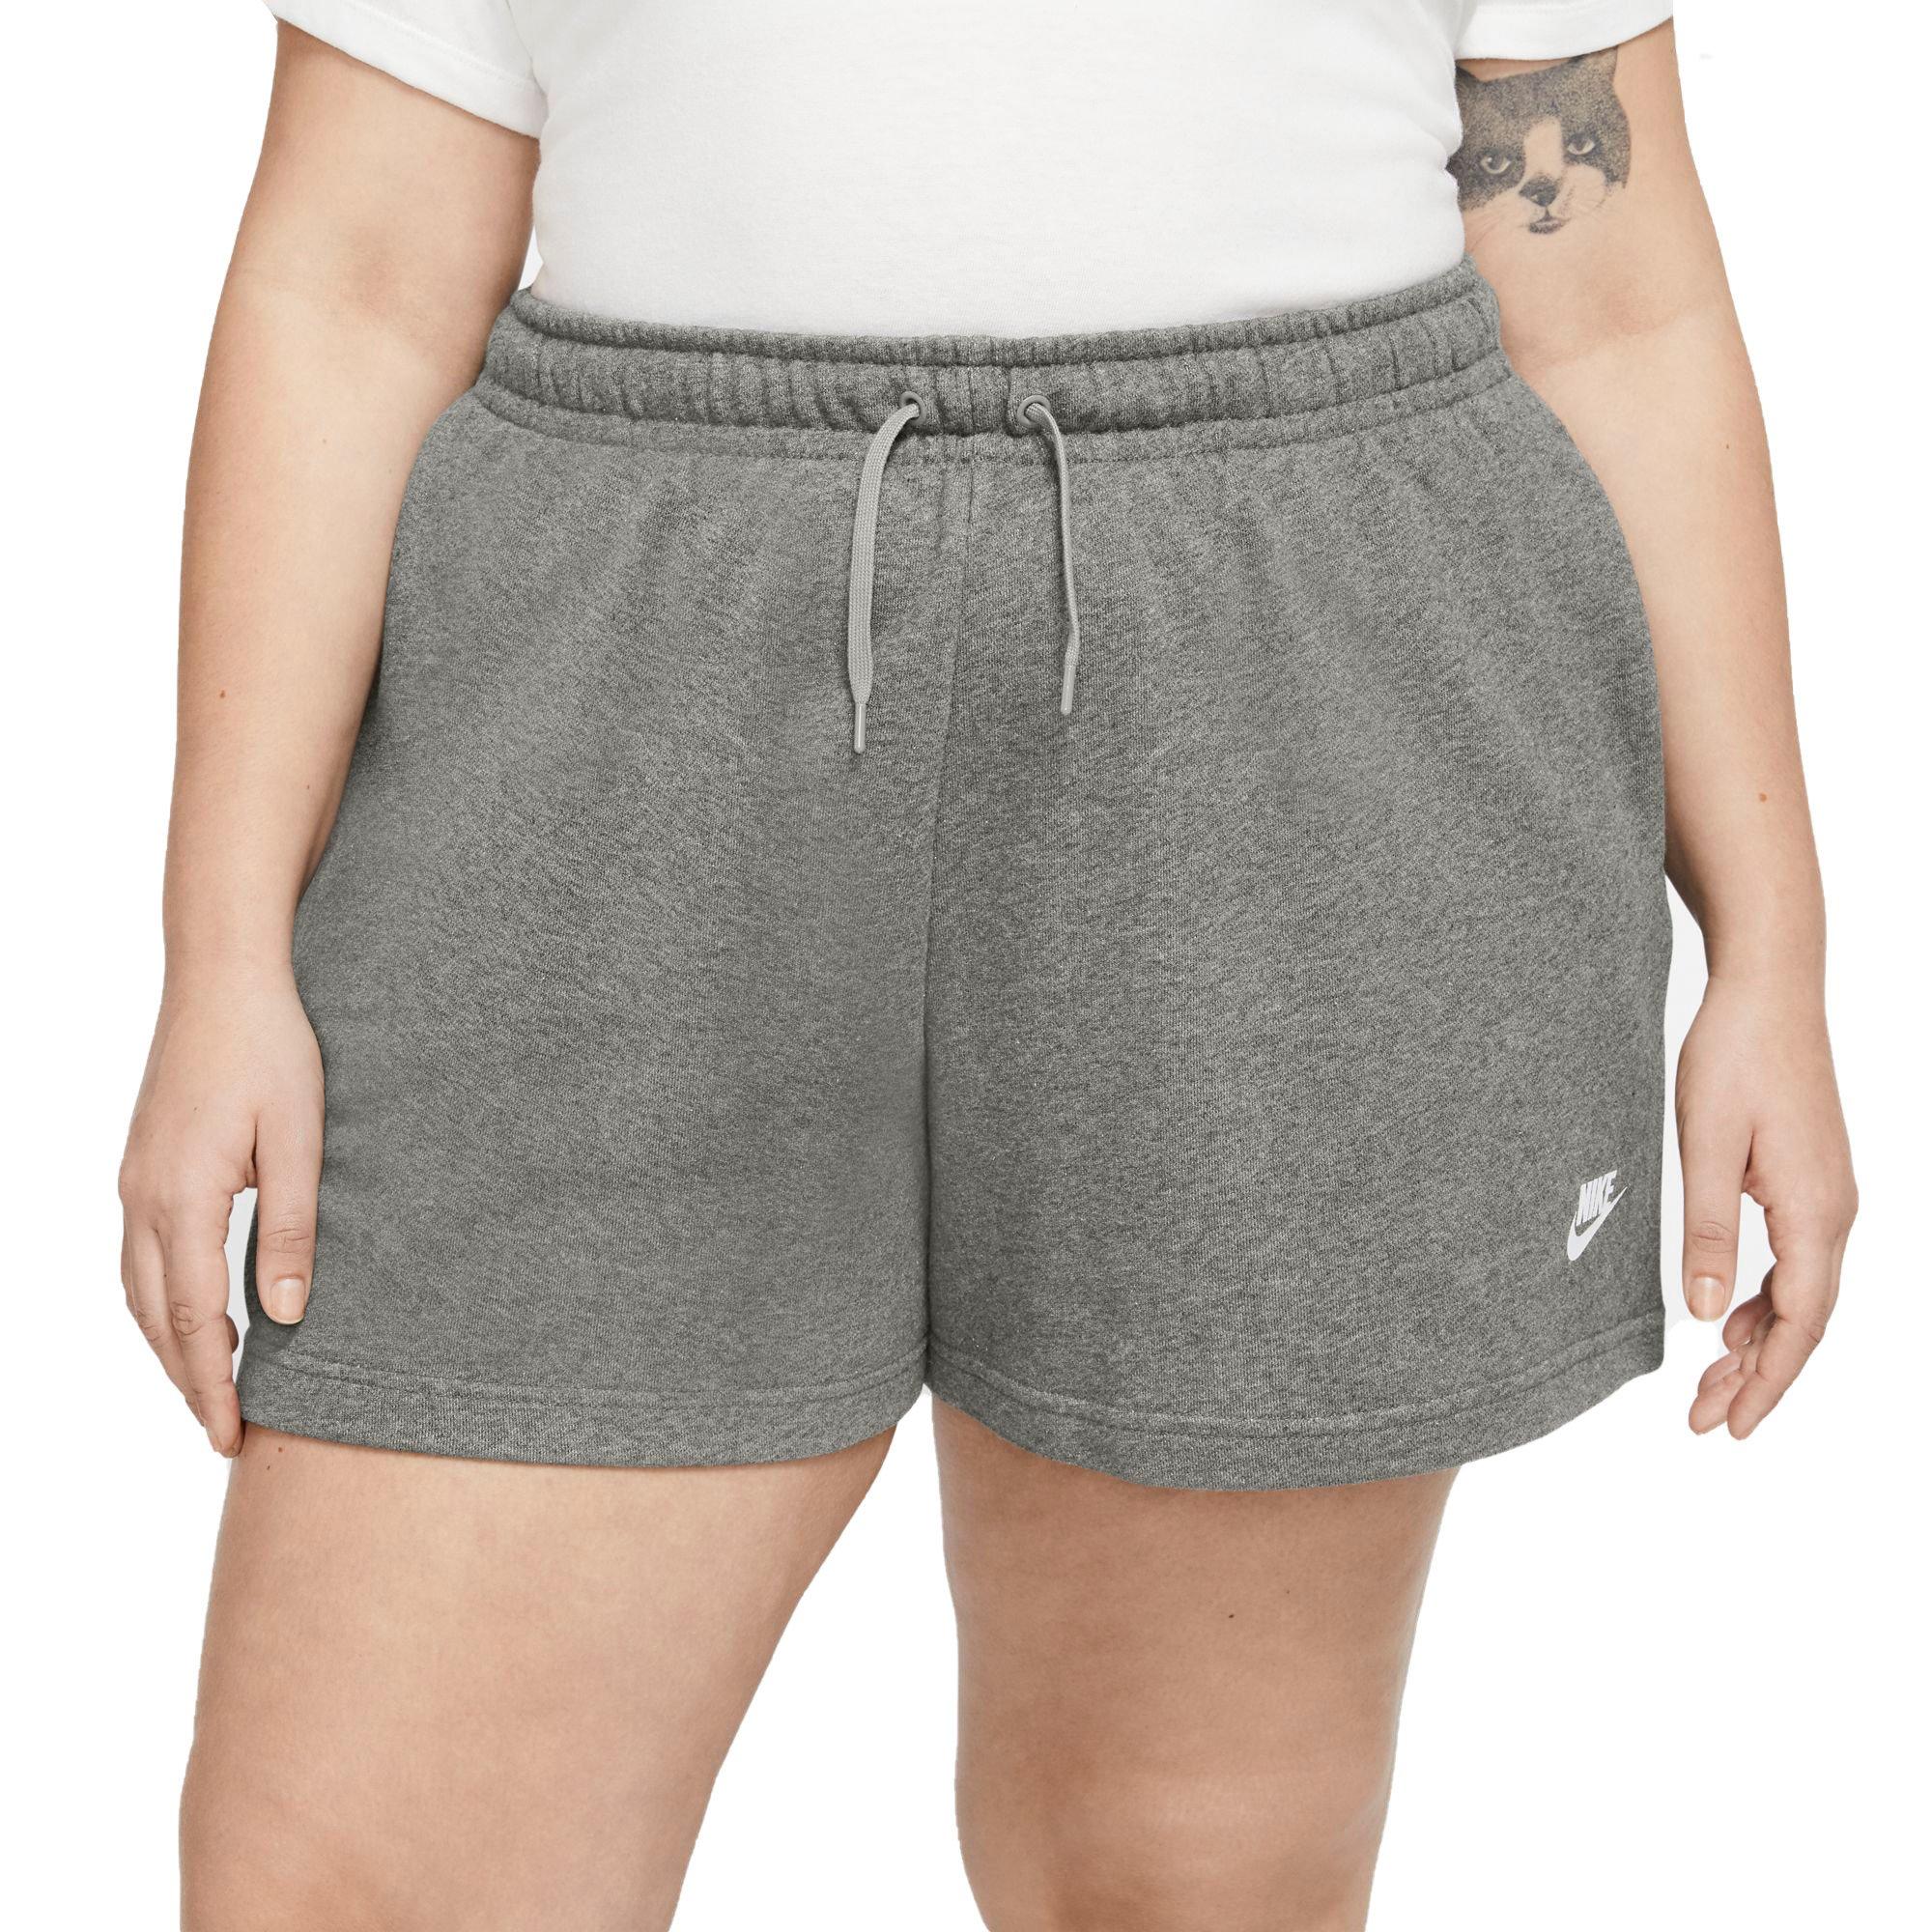 Nike Womens Sportswear Club Fleece Shorts